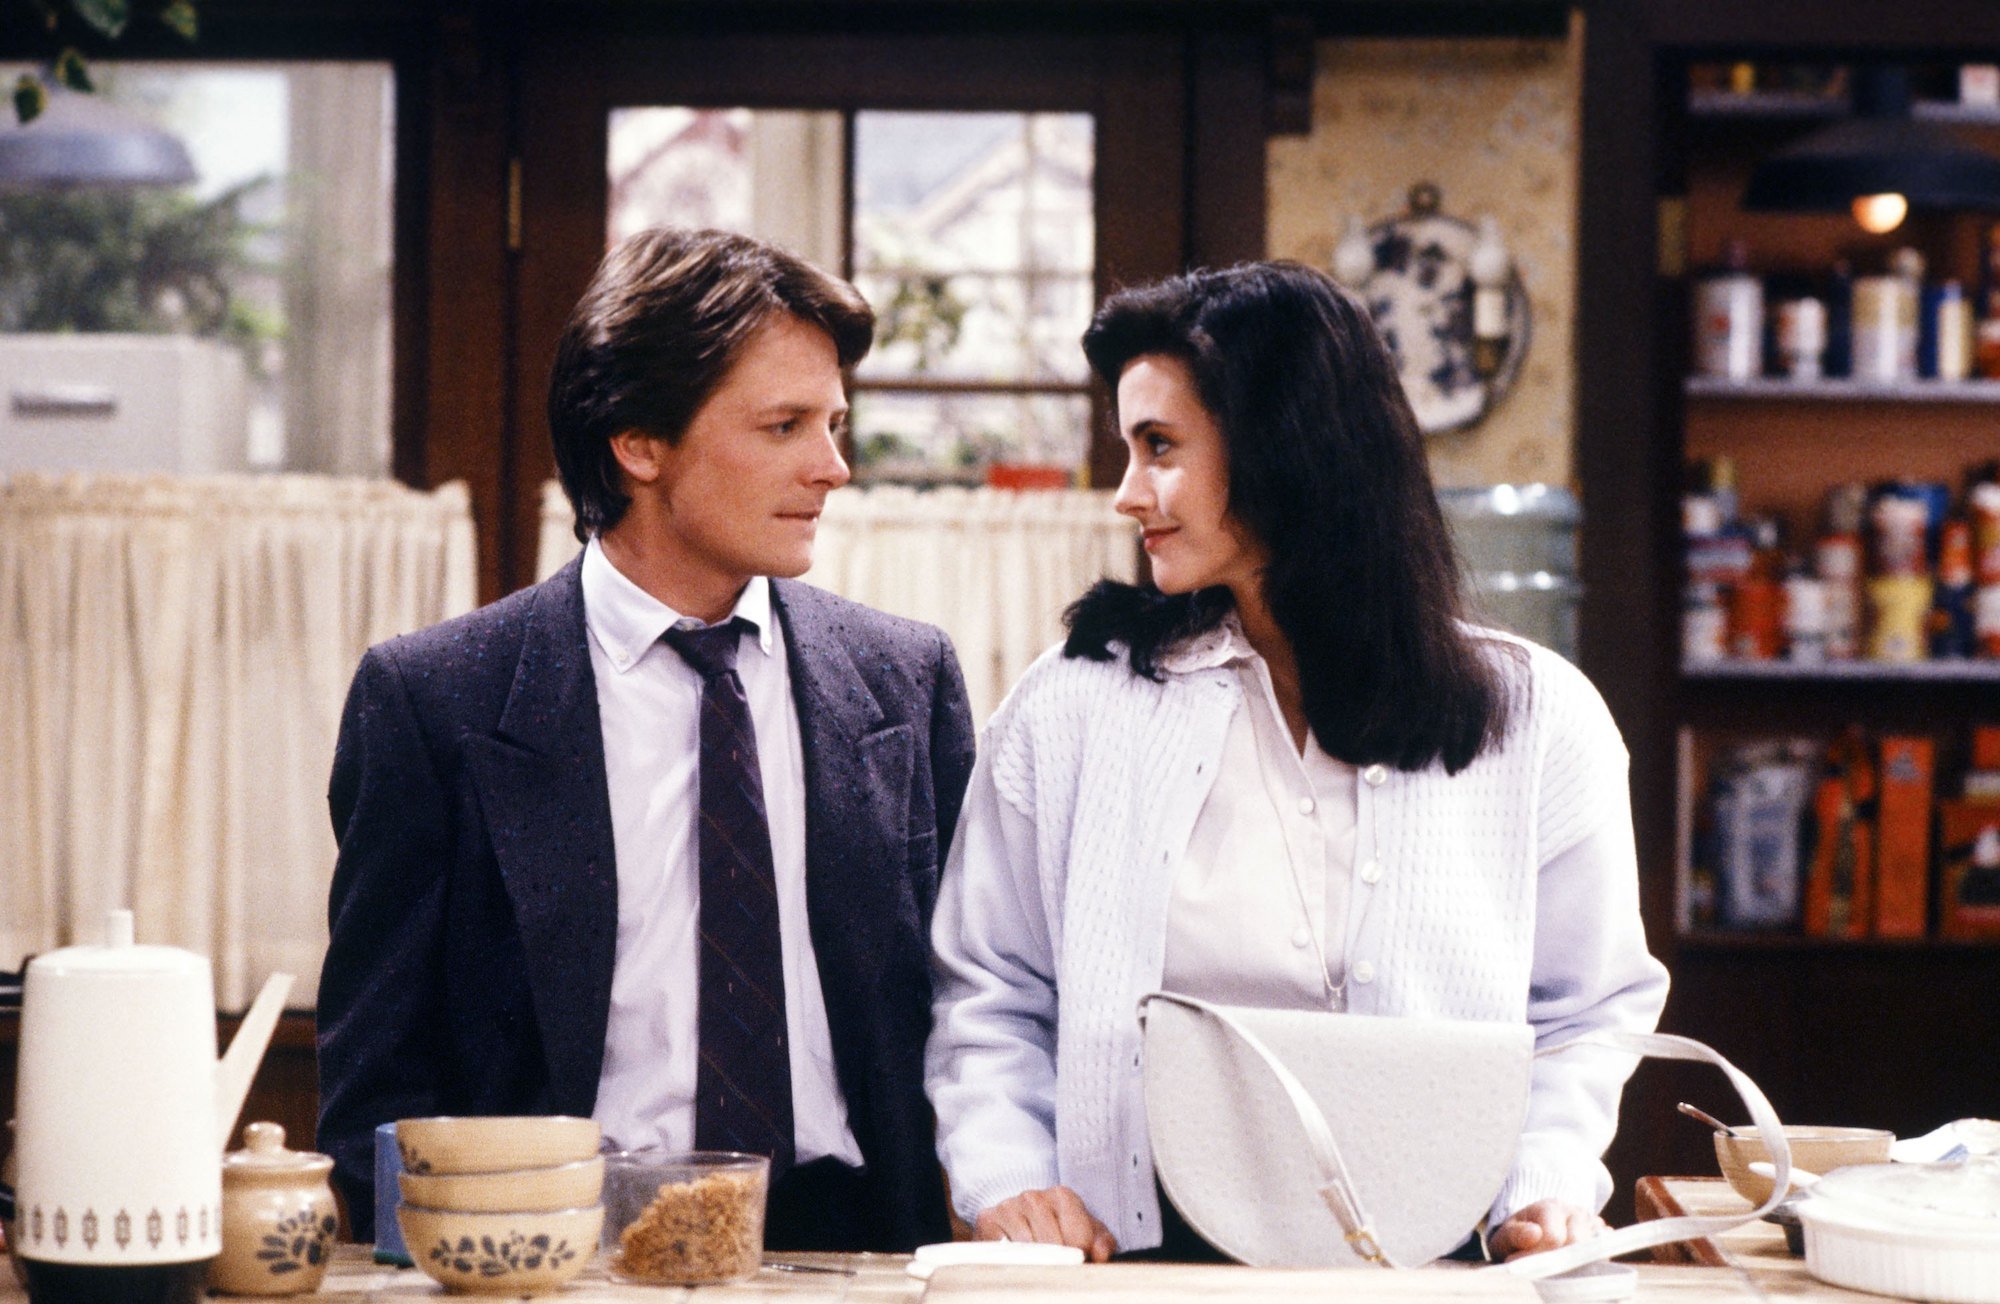 (L-R) Michael J. Fox as Alex P. Keaton, Courteney Cox as Lauren Miller on 'Family Ties' in a kitchen